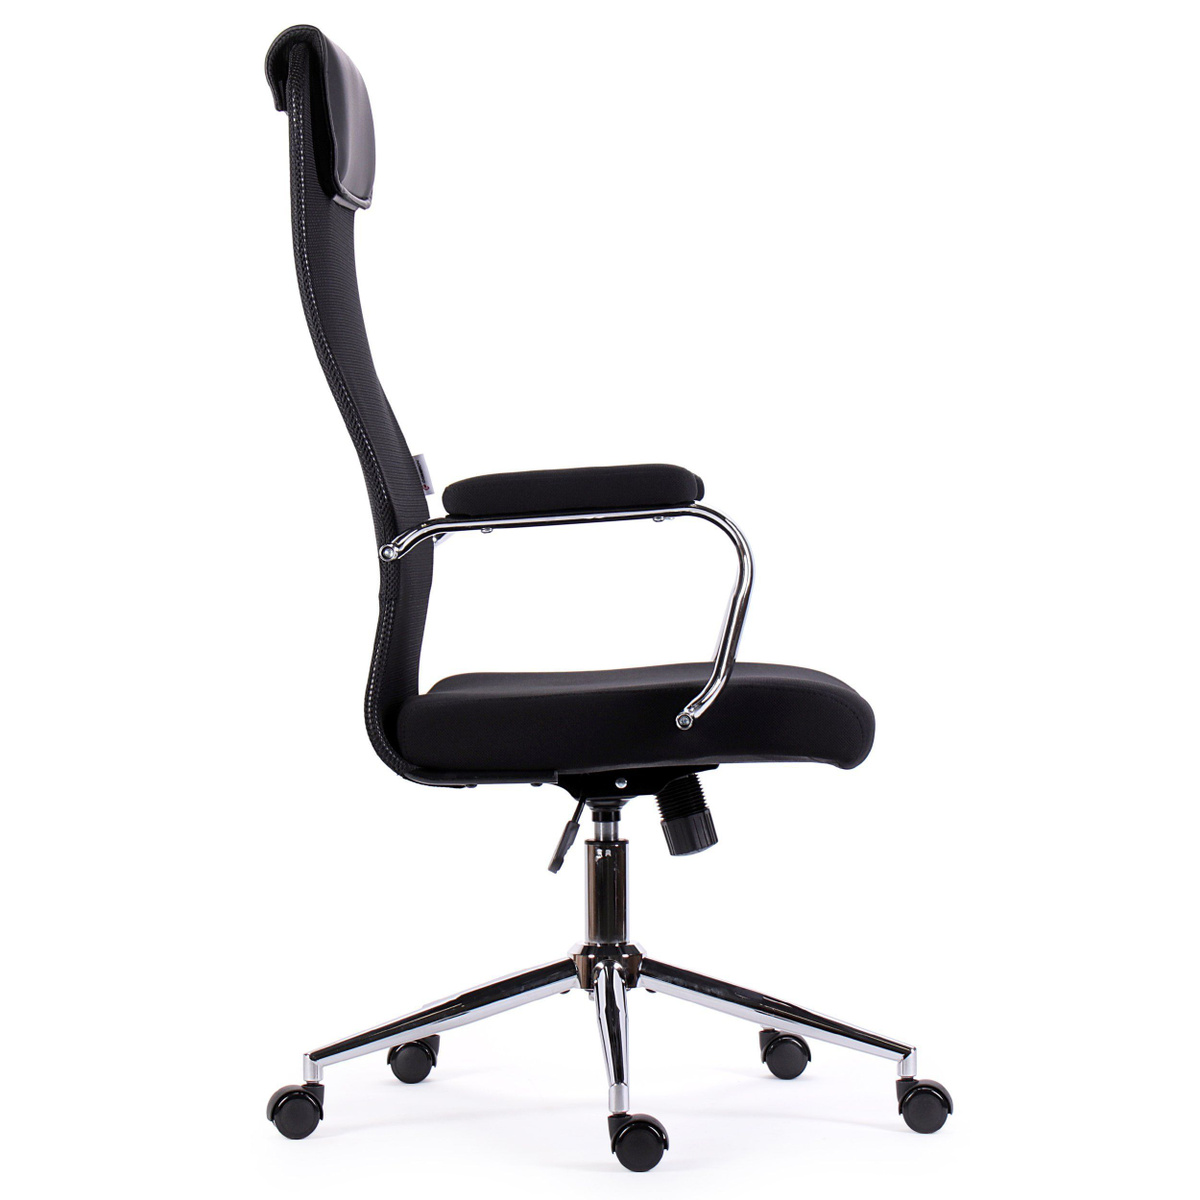 кресло компьютерное; компьютерное кресло; стул офисный; офисное кресло; кресло офисное; компьютерный стул; офисное кресло сетка; Samurai; Flight; Opera; бюрократ; EX-540;